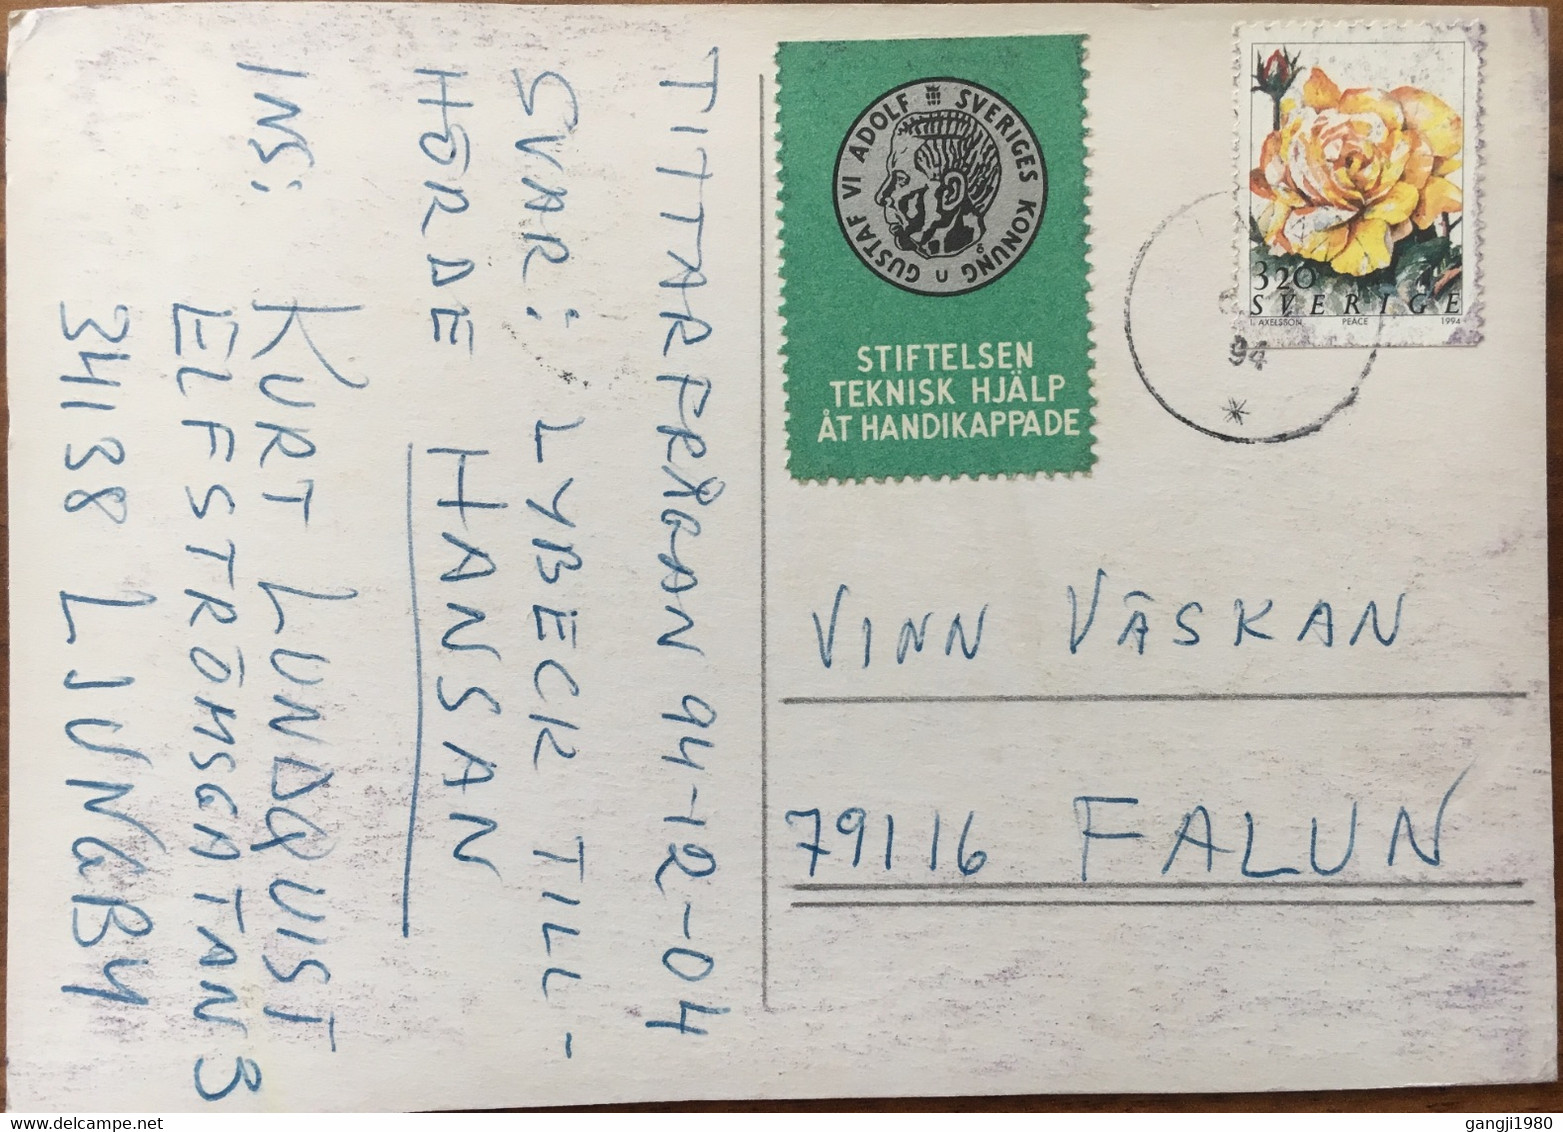 SWEDEN 1994, VIGNETTE KING GUSTAF VIADOLE ,STIFTELSEN IEKNISK HIJALP AT HANDIKAPPADE CINDRELA ,RELLOW ROSE STAMP ON POST - Briefe U. Dokumente